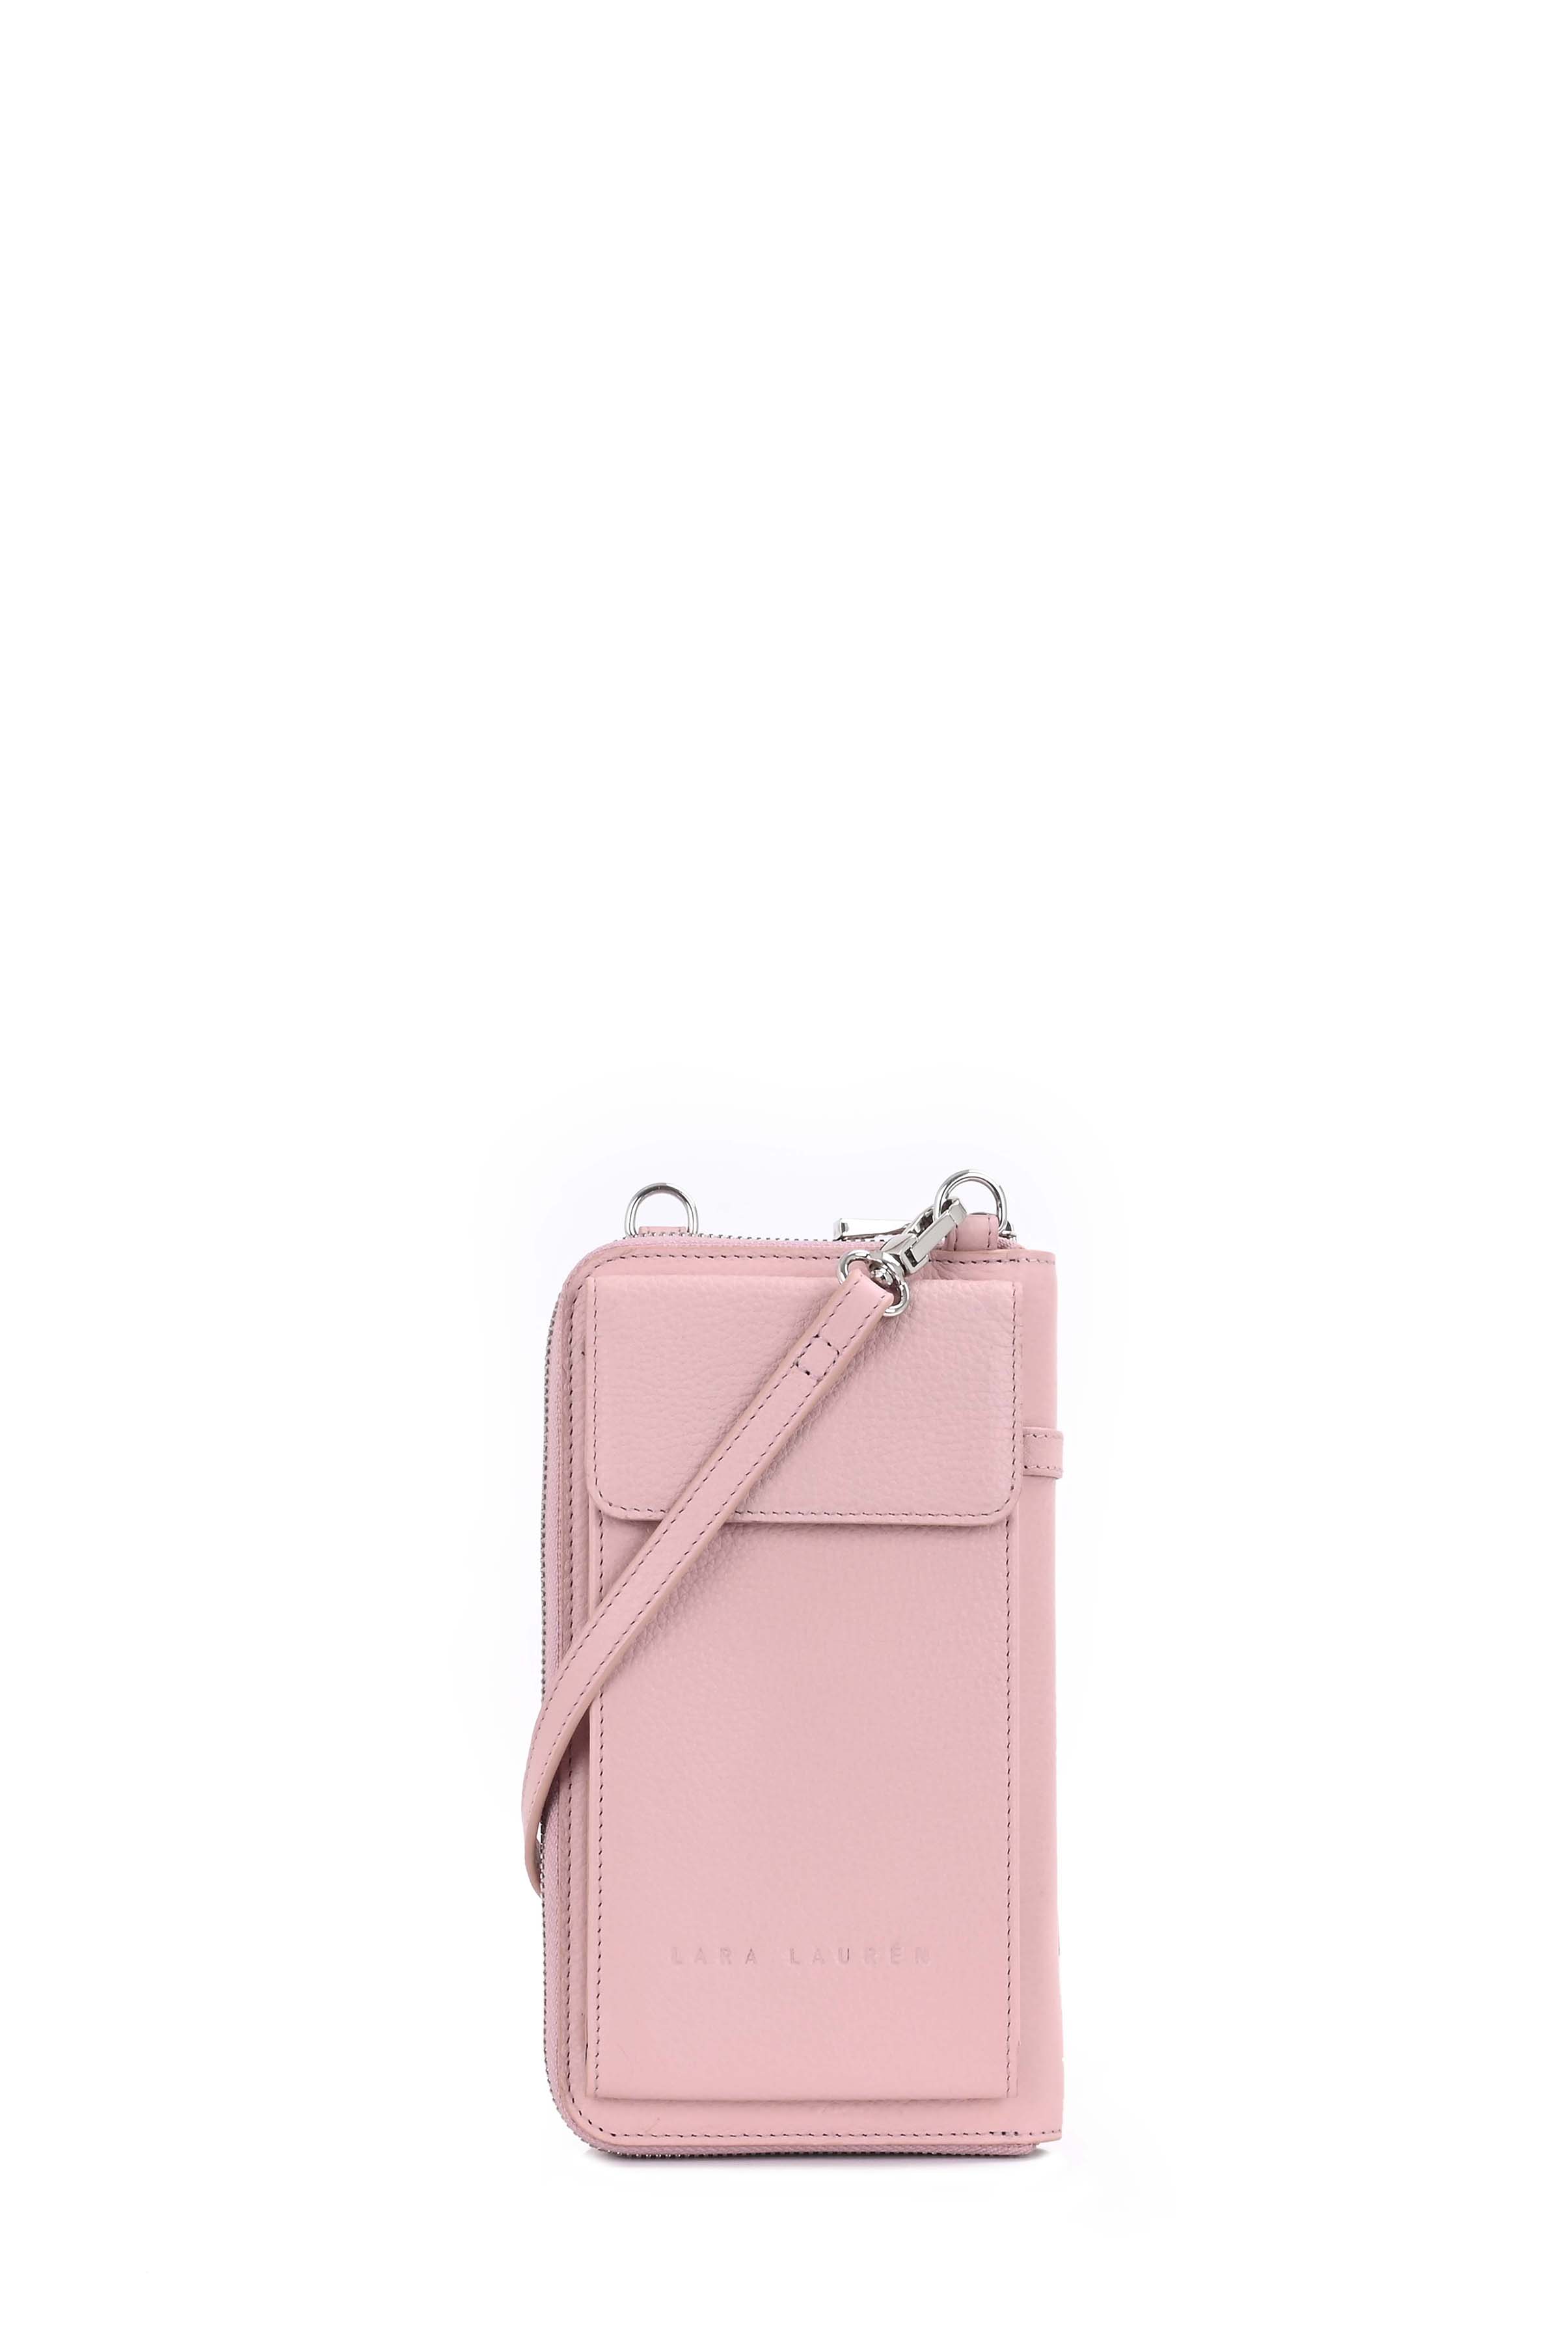 CITY Wallet A Mobilebag, pale mauve/rose